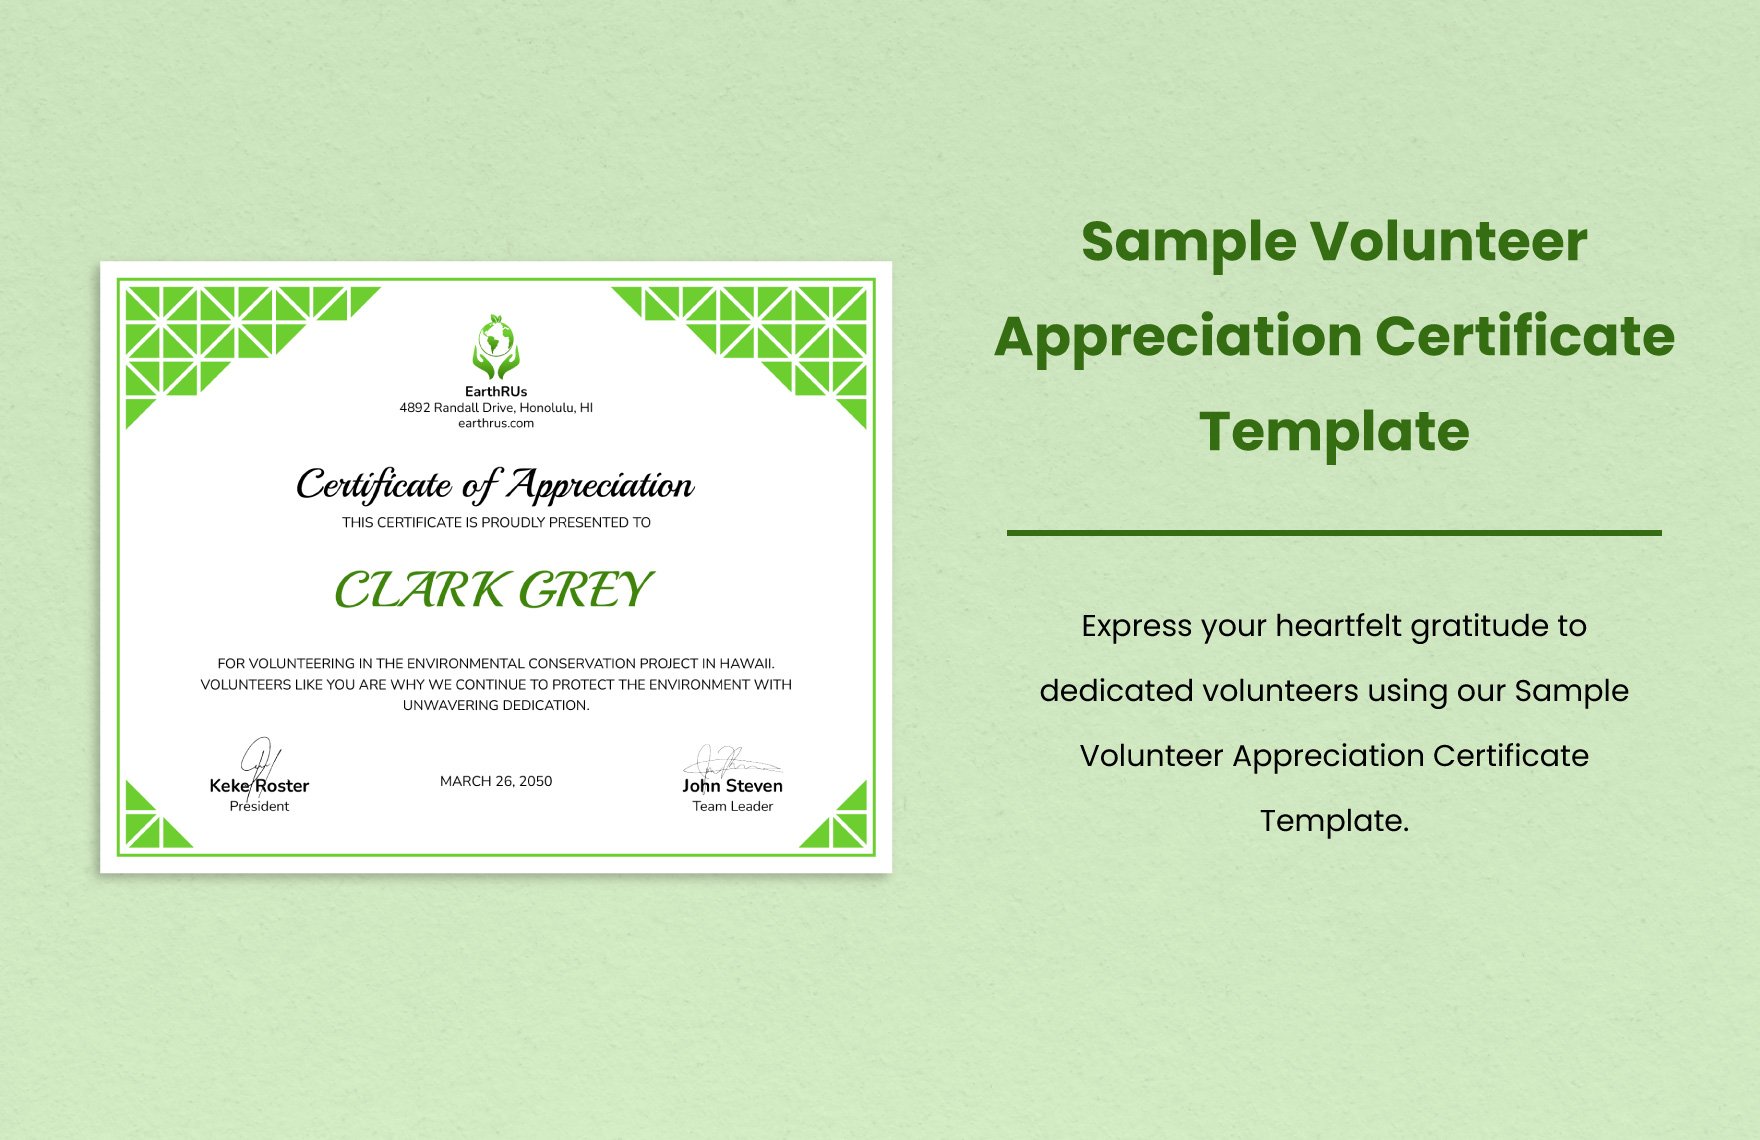 Sample Volunteer Appreciation Certificate Template